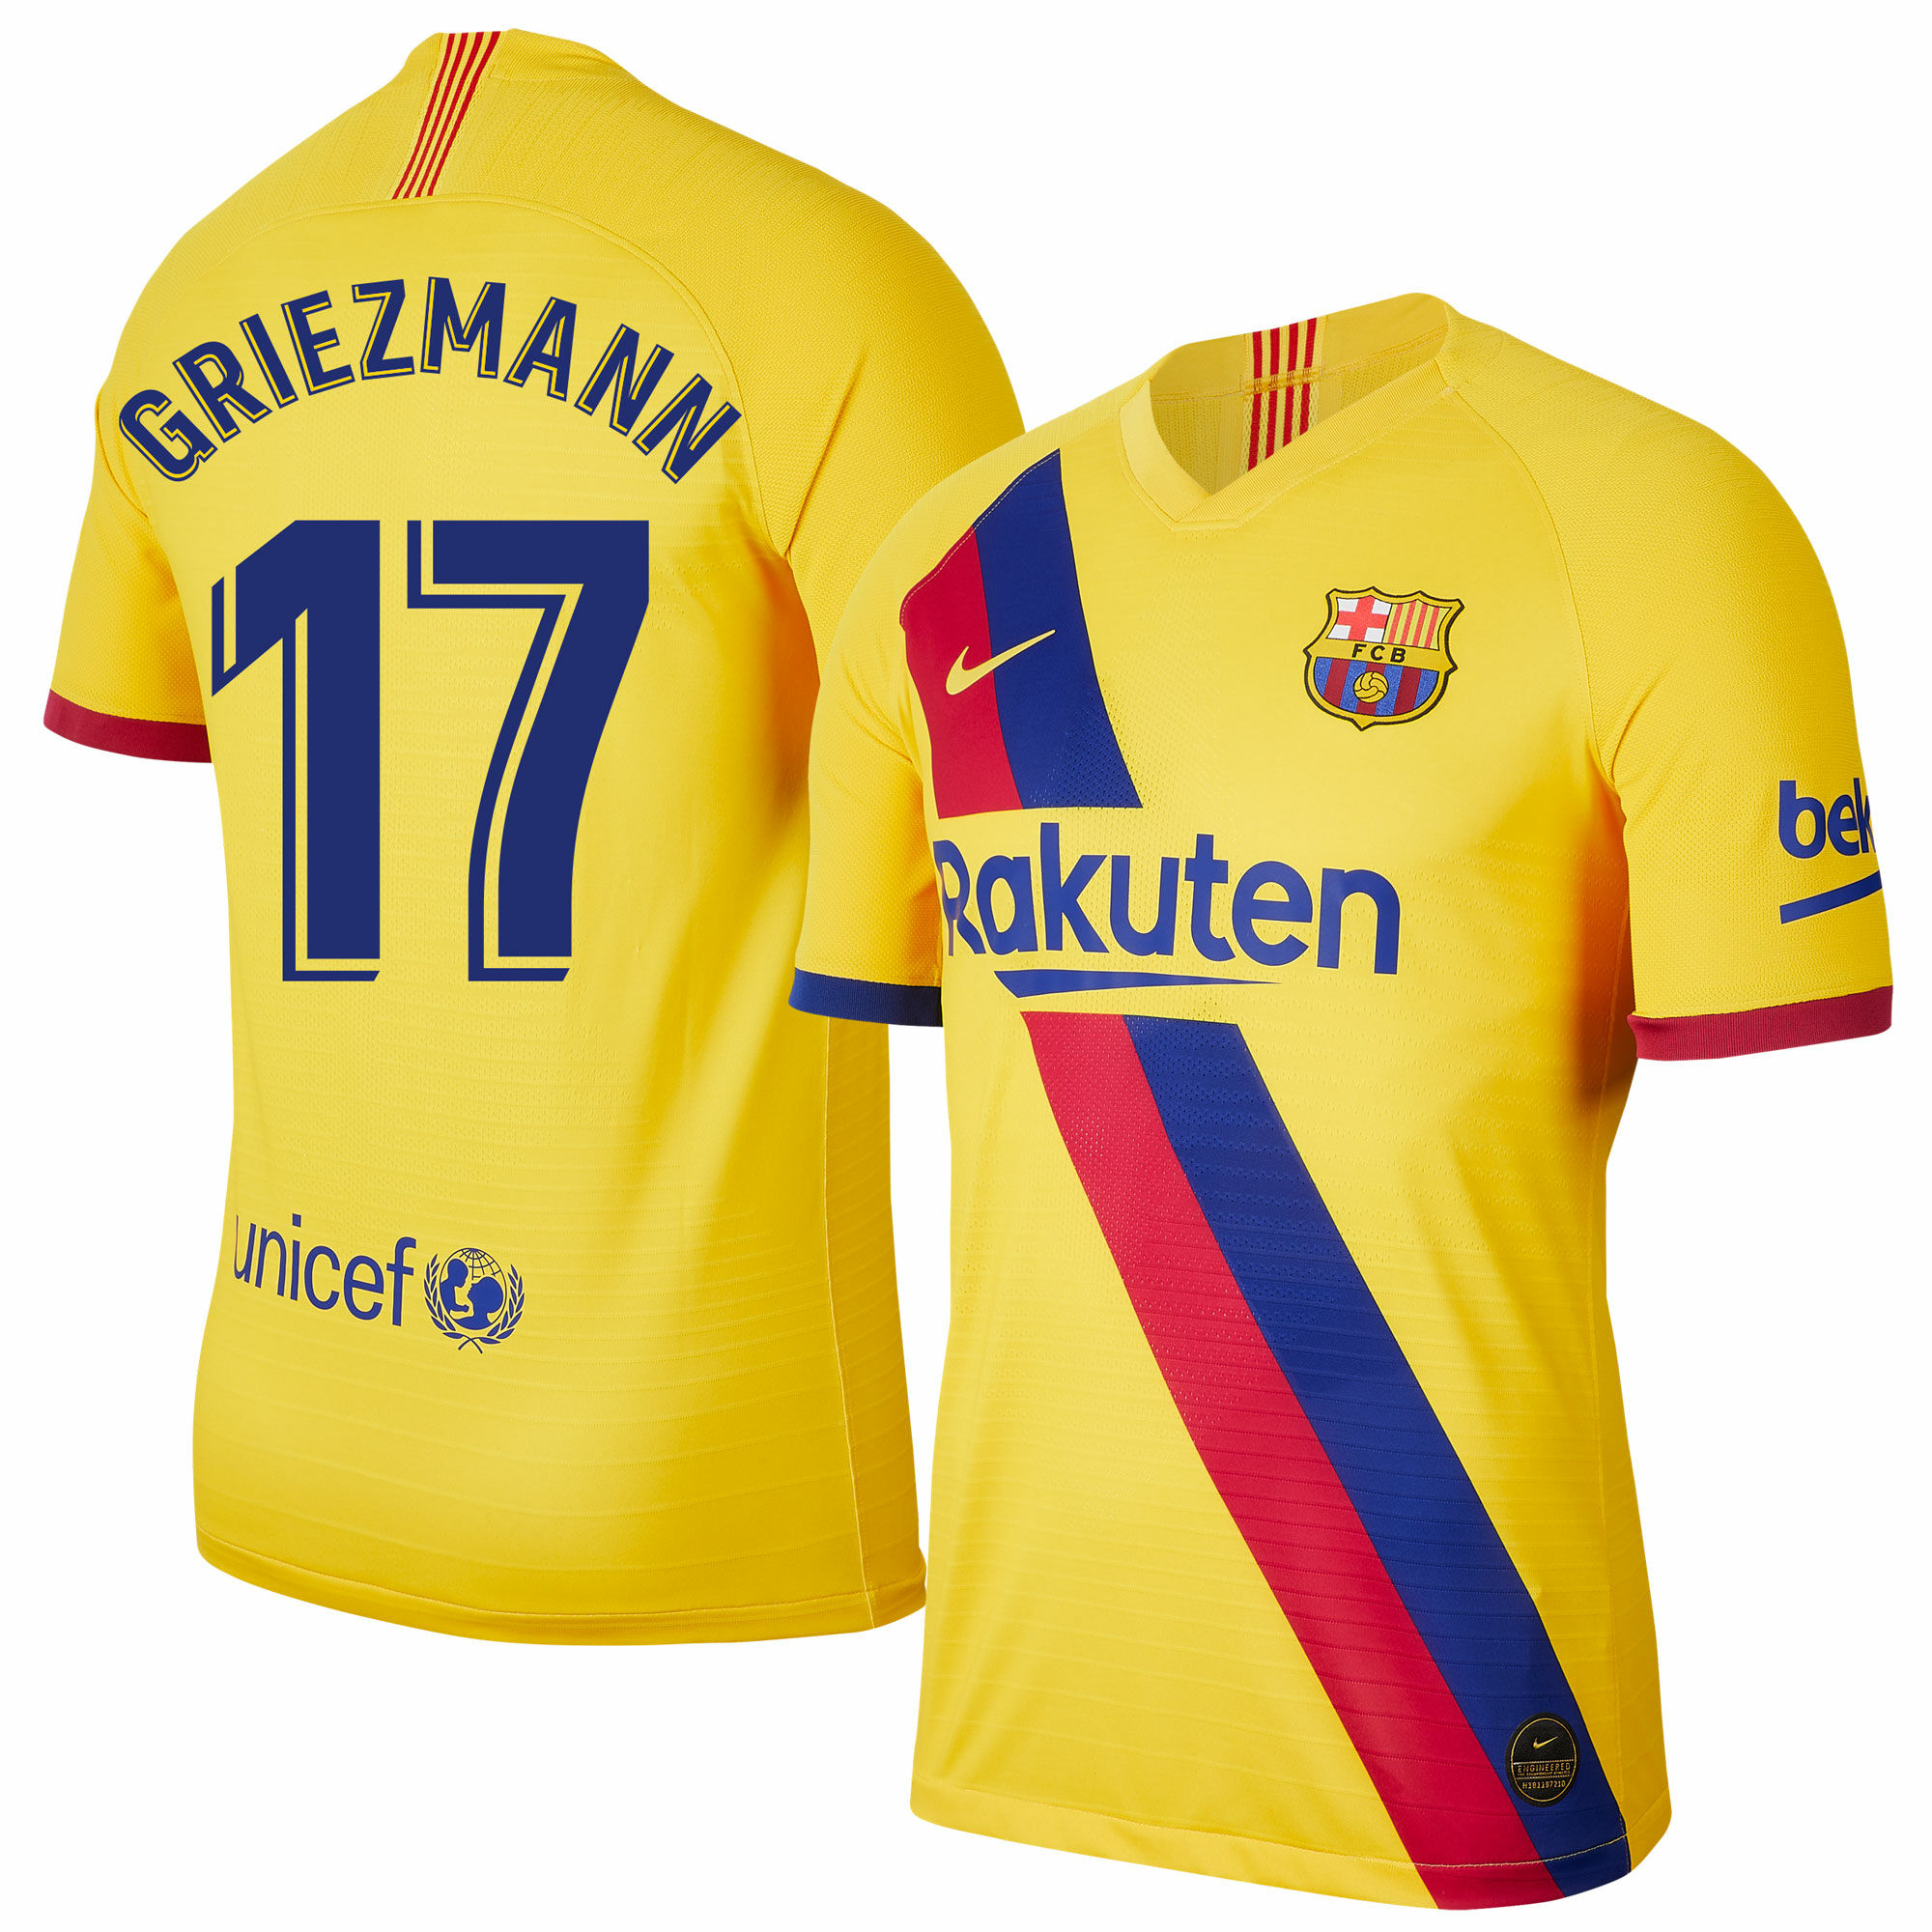 Barcelona - Dres fotbalový - číslo 17, fan potisk, sezóna 2019/20, žlutý, Antoine Griezmann, venkovní